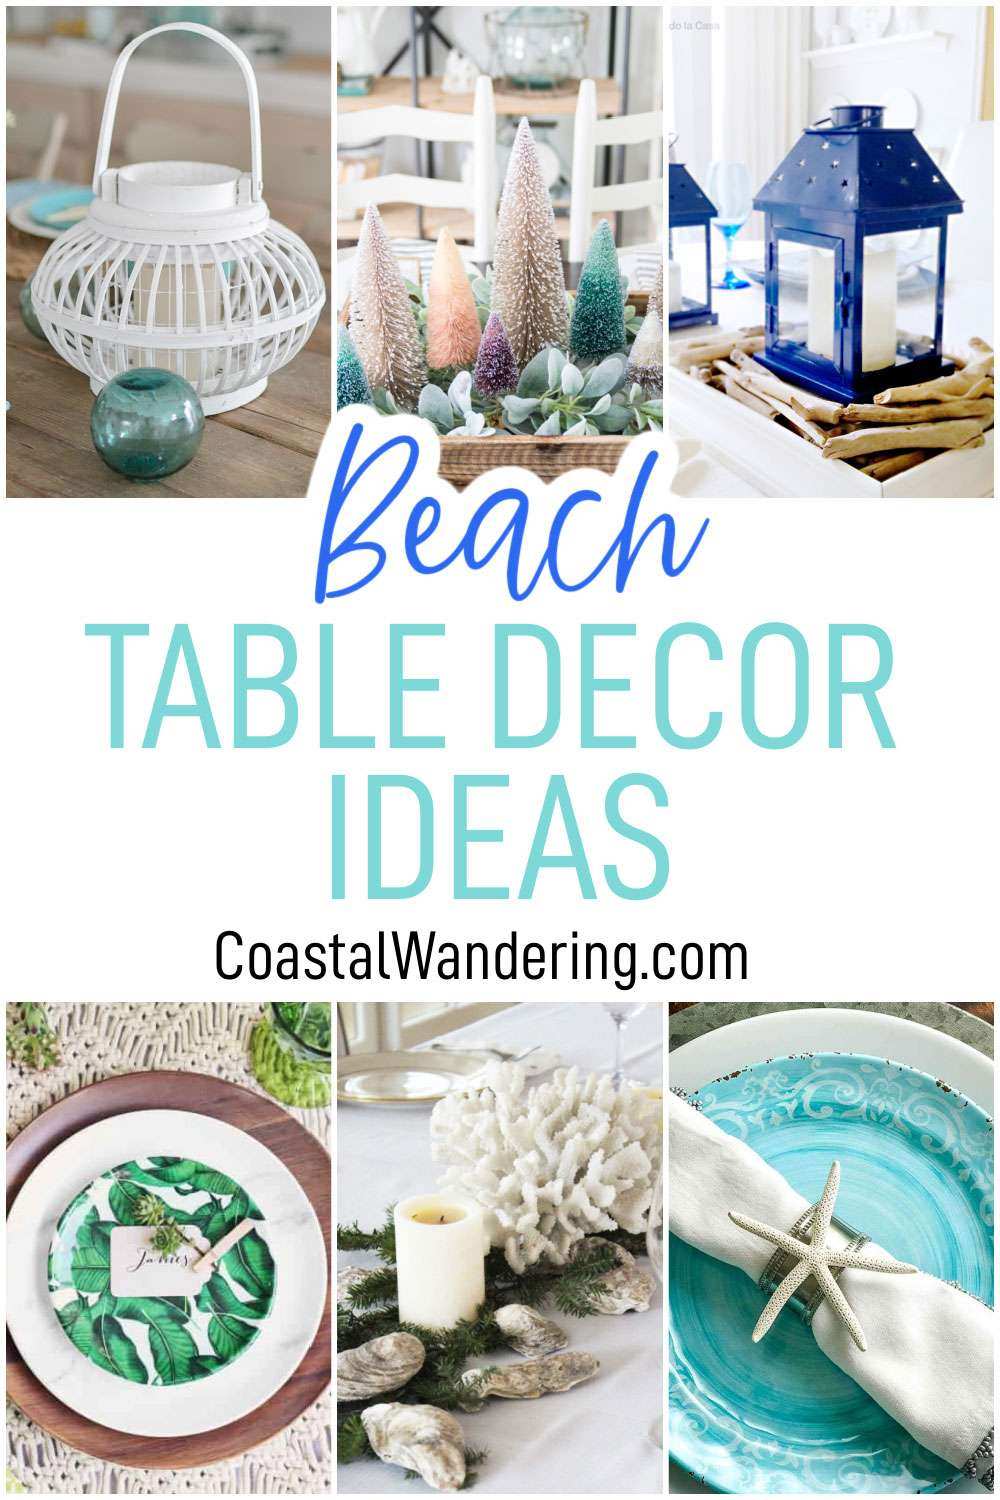 Beach table decor ideas